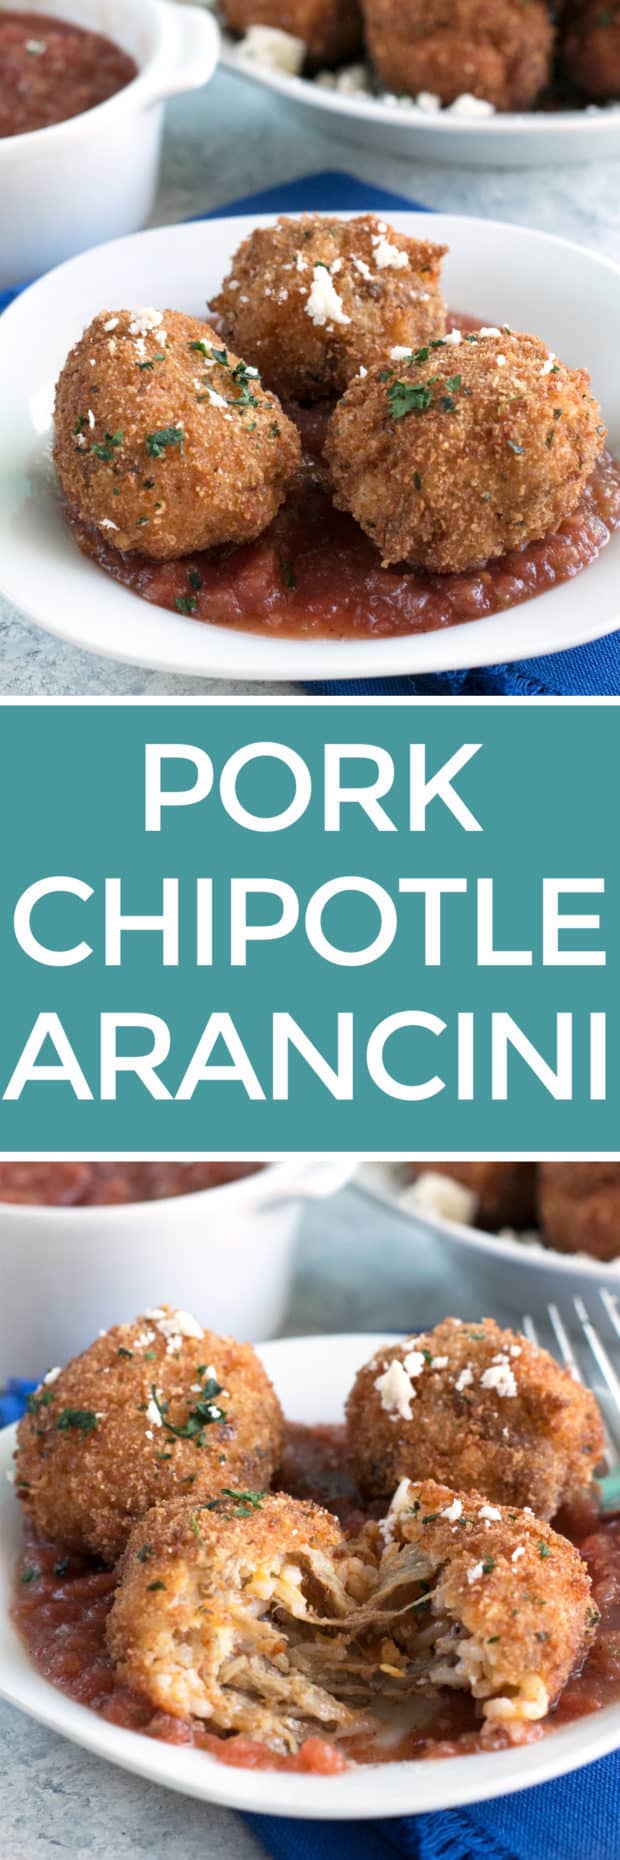 Pulled Pork Chipotle Arancini | cakenknife.com #pulledpork #fried #tailgating #appetizer